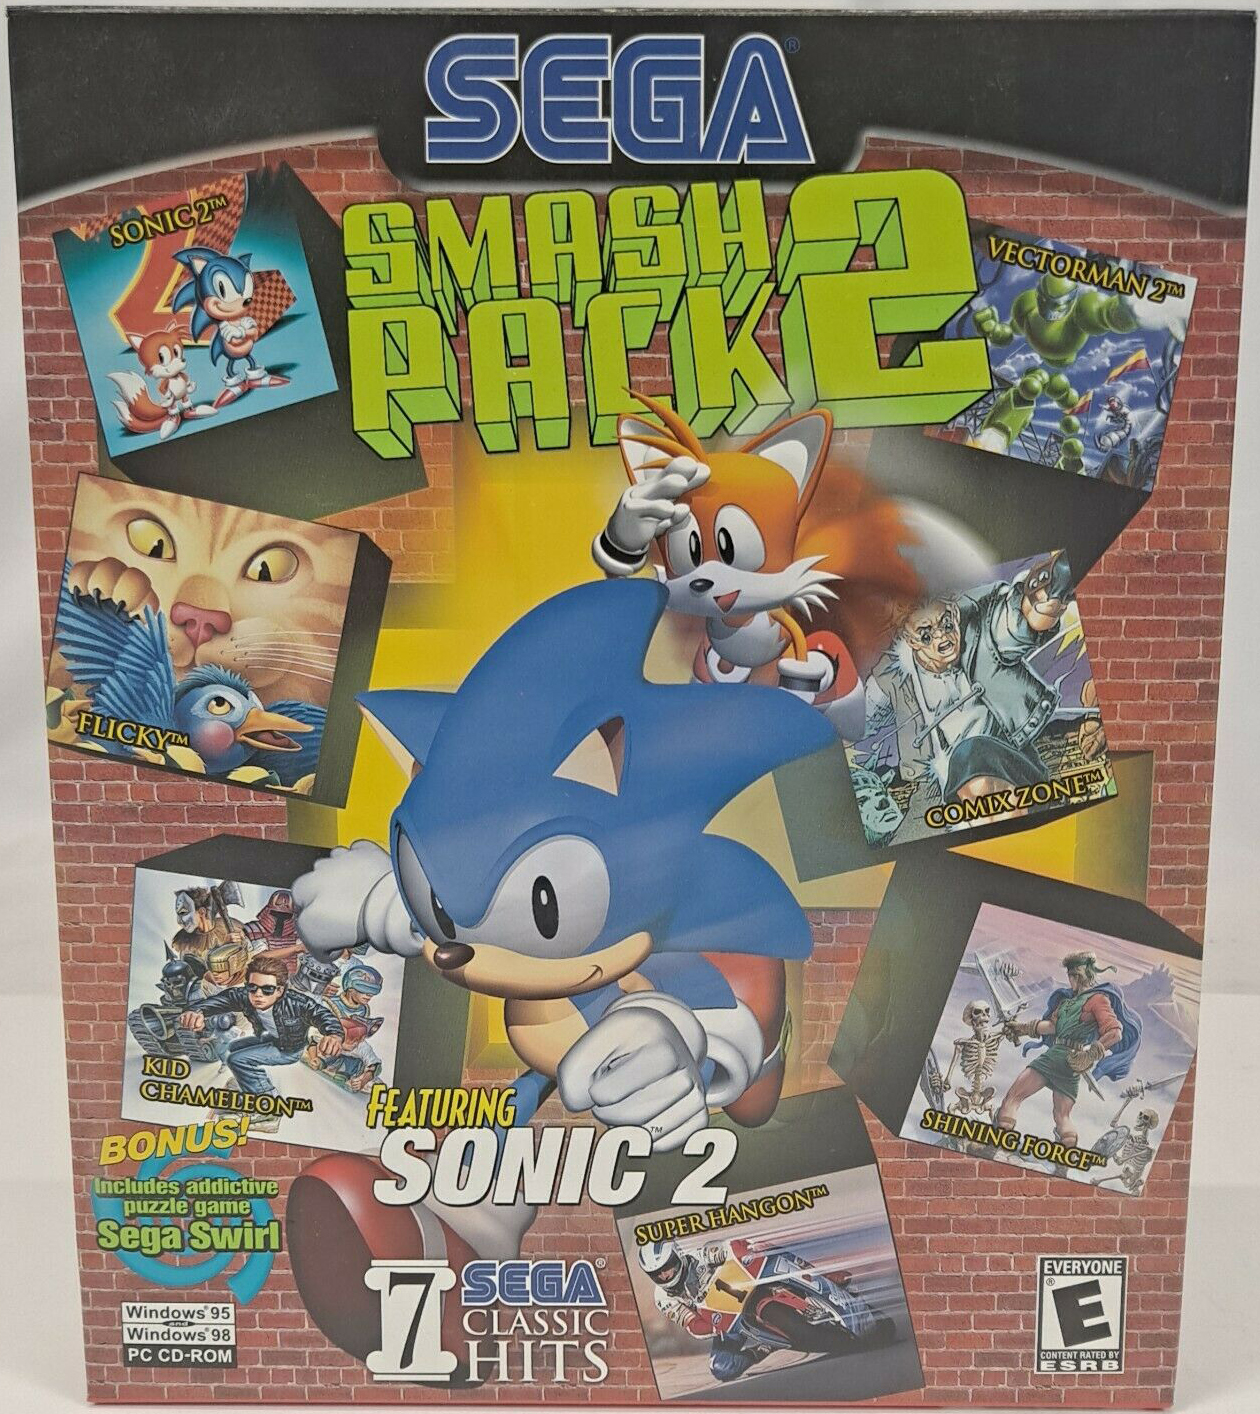 Sega Sonic Pack